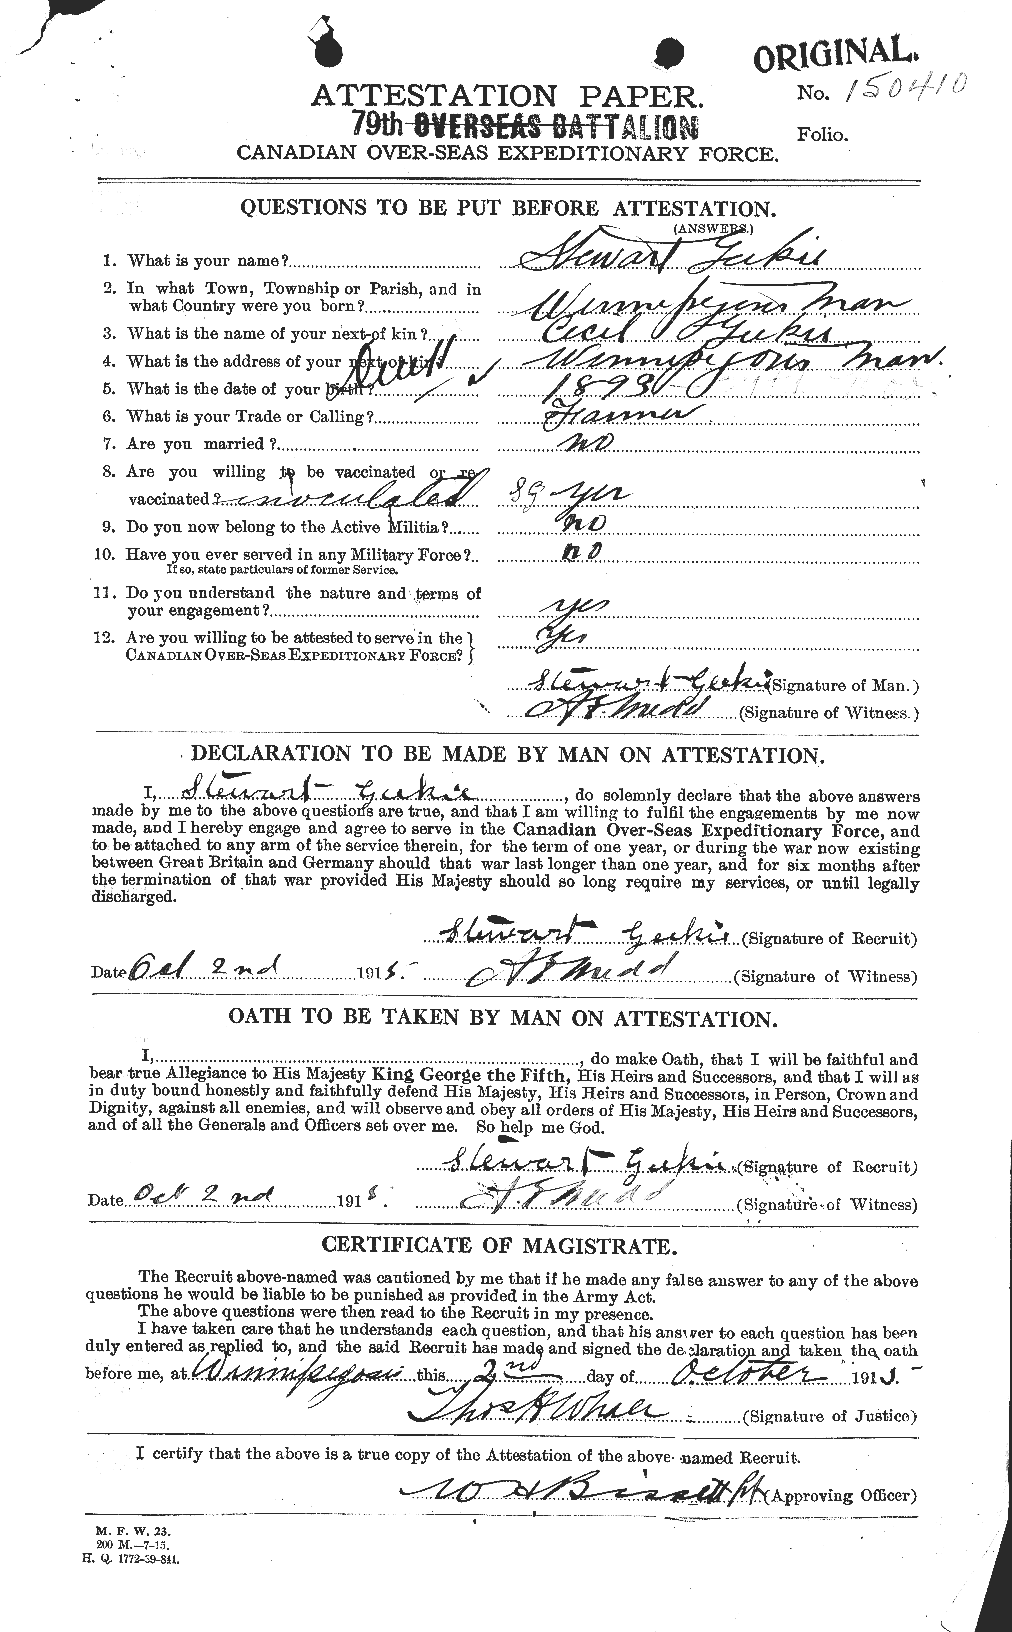 Dossiers du Personnel de la Première Guerre mondiale - CEC 347331a